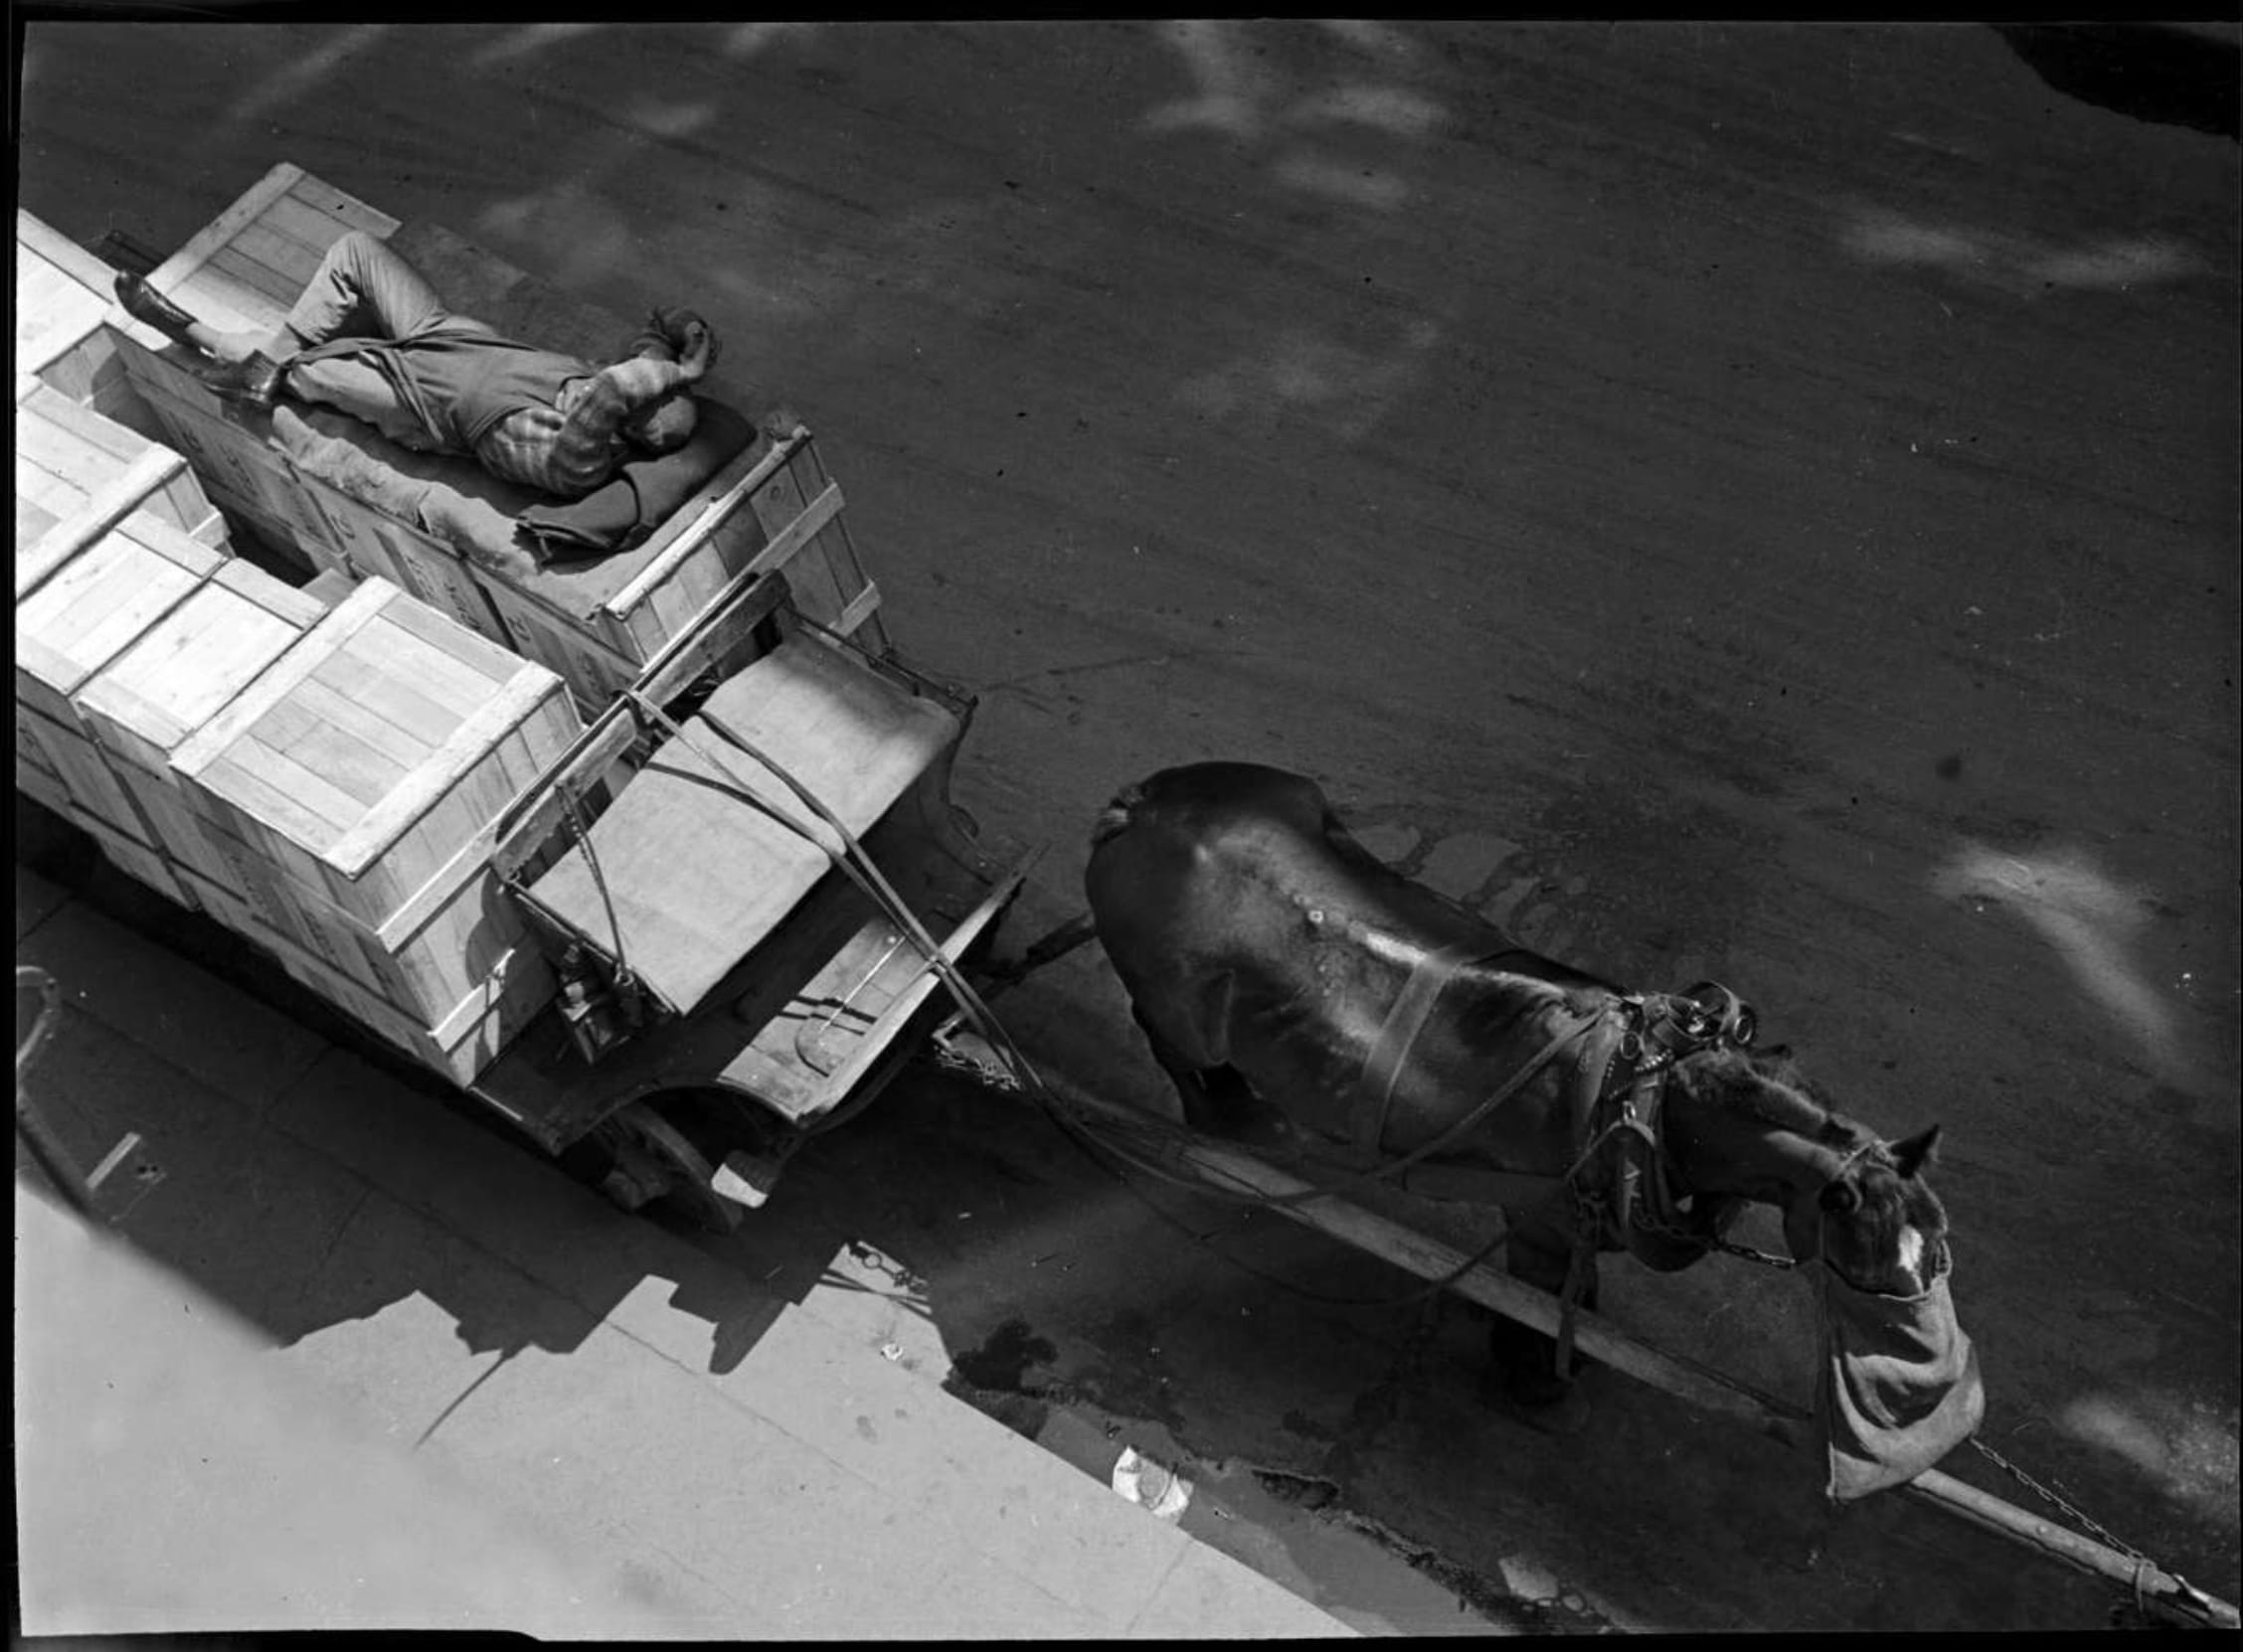 2a. Imre Kinszki, <i>Pihenő szállítómunkás fekszik egy lovas kocsi szállítmányán</i> (« Un livreur se repose couché sur le chargement de sa charrette »), 1934 © FSZEK